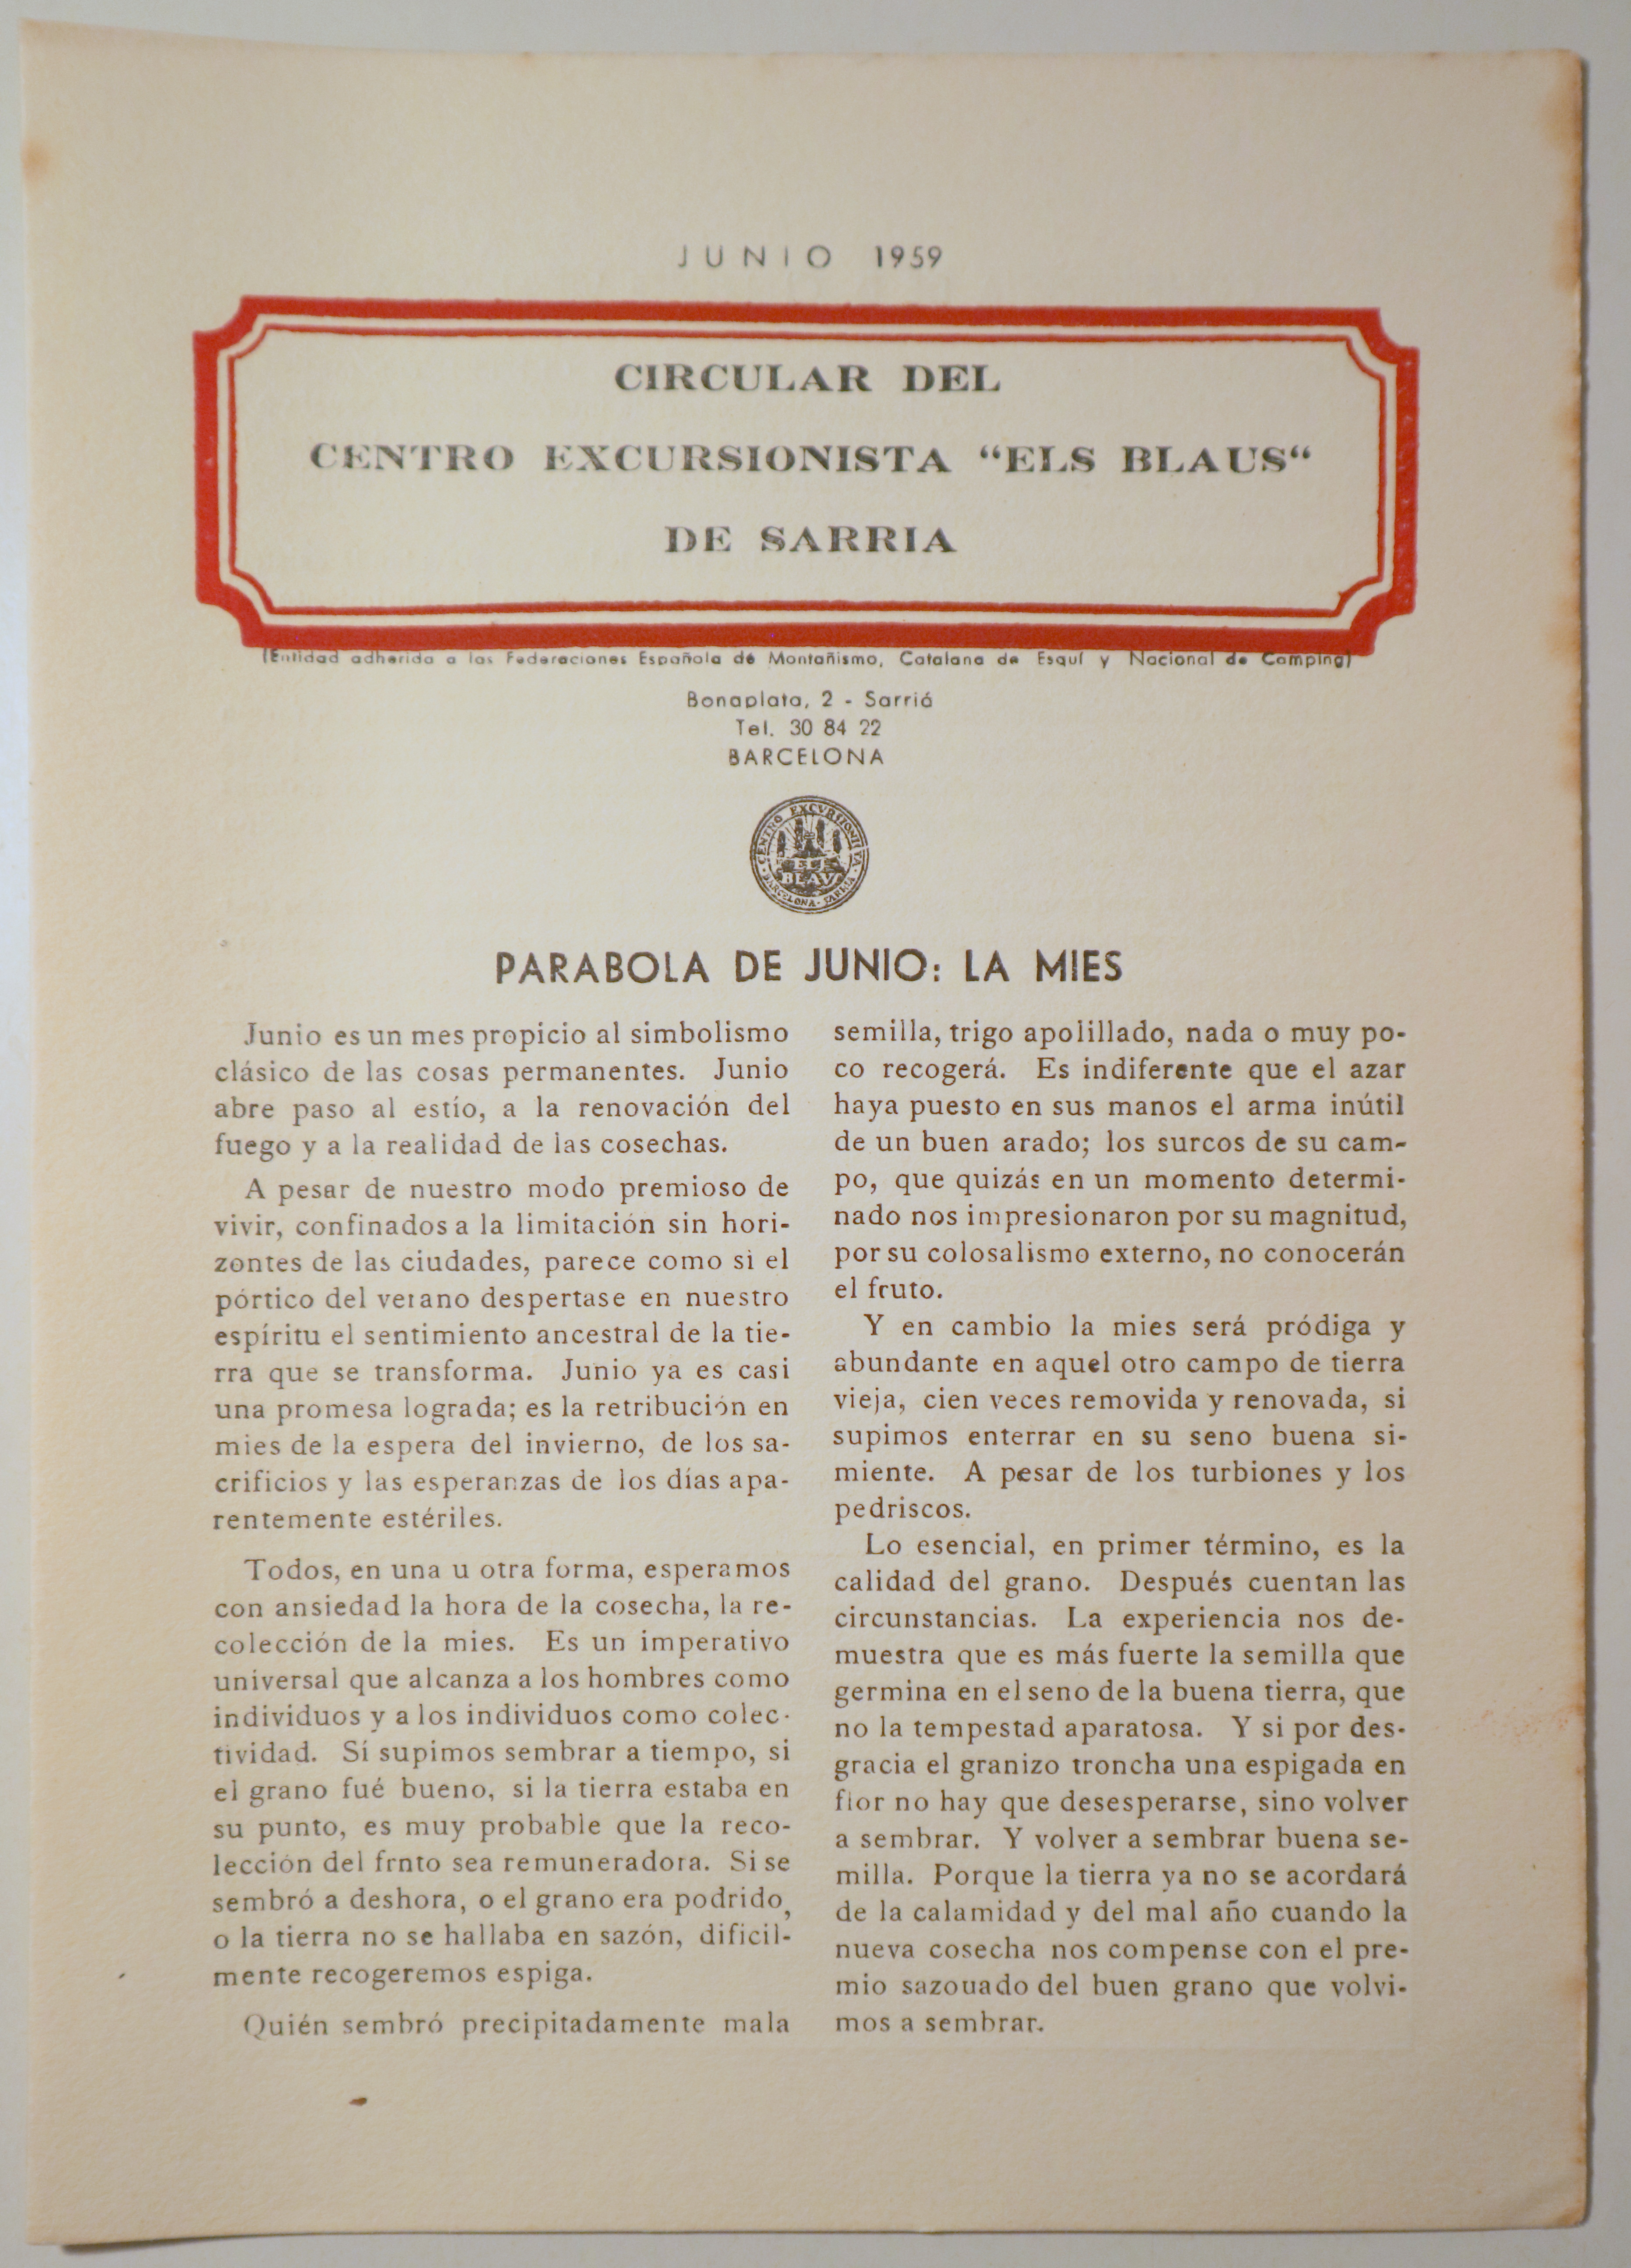 CIRCULAR DEL CENTRO EXCURSIONISTA "ELS BLAUS" DE SARRIÀ. Junio 1959 - Barcelona 1959